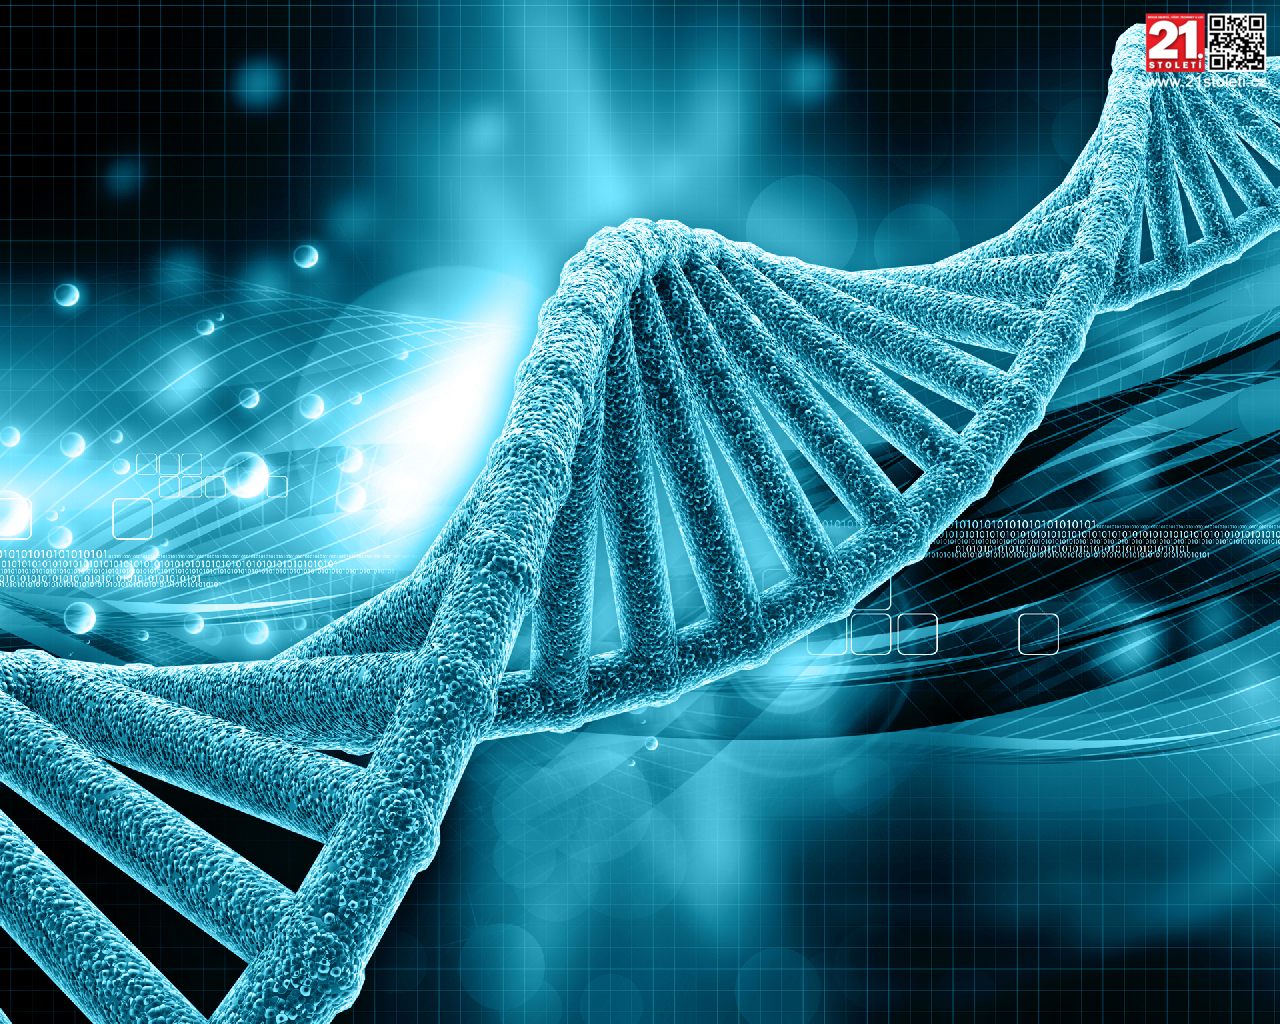 DNA’nın Yapısı Kuran’da İnsan Suresi’nde Tarif Edilmiştir